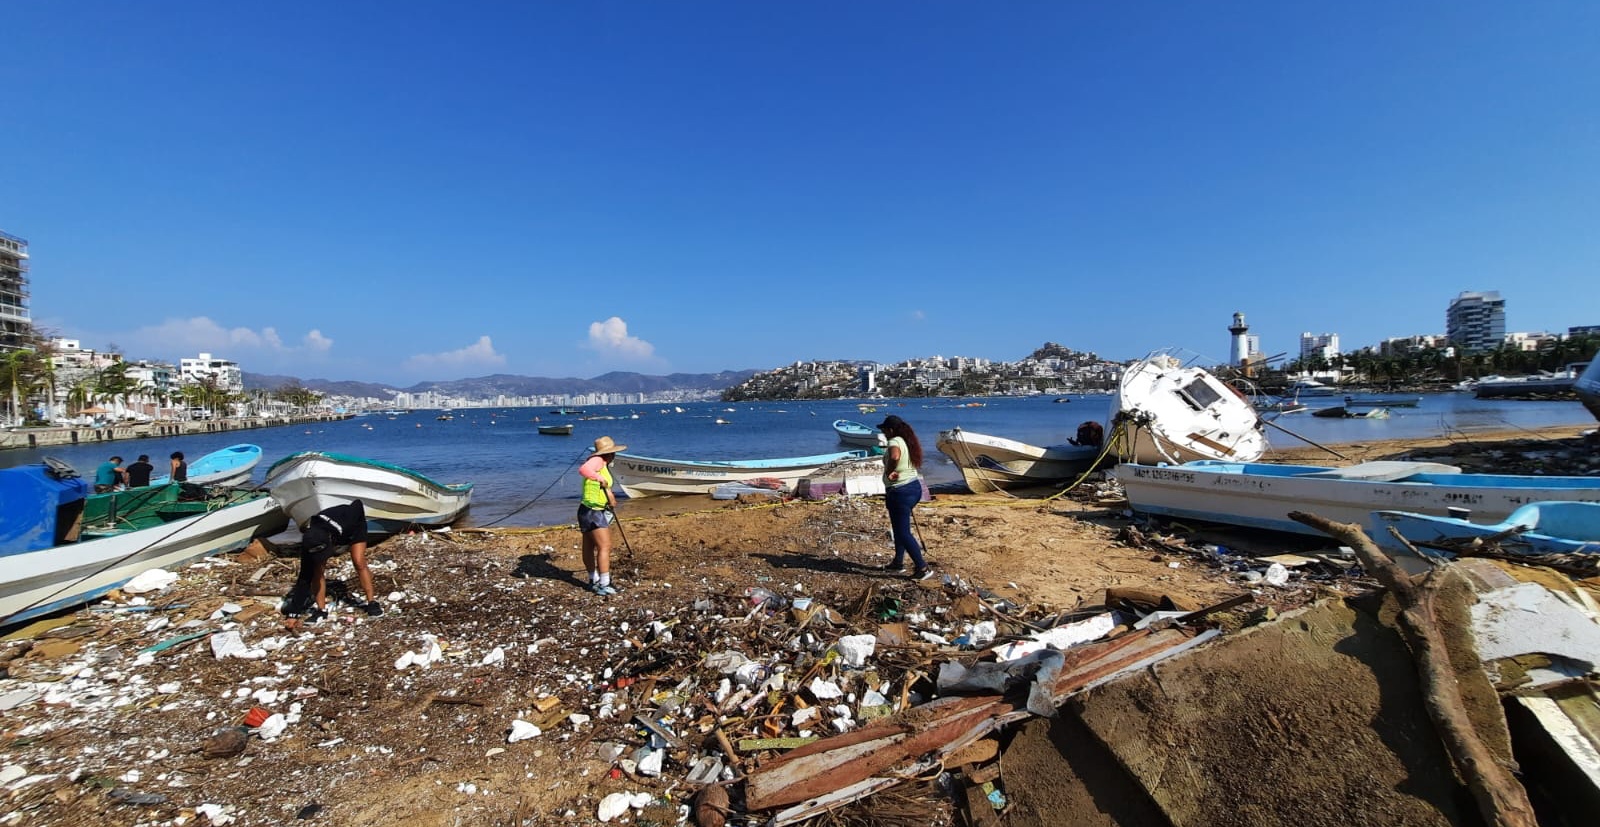 Pescadores y marineros de Acapulco estiman que fallecidos y desaparecidos por “Otis” son superiores a las cifras oficiales